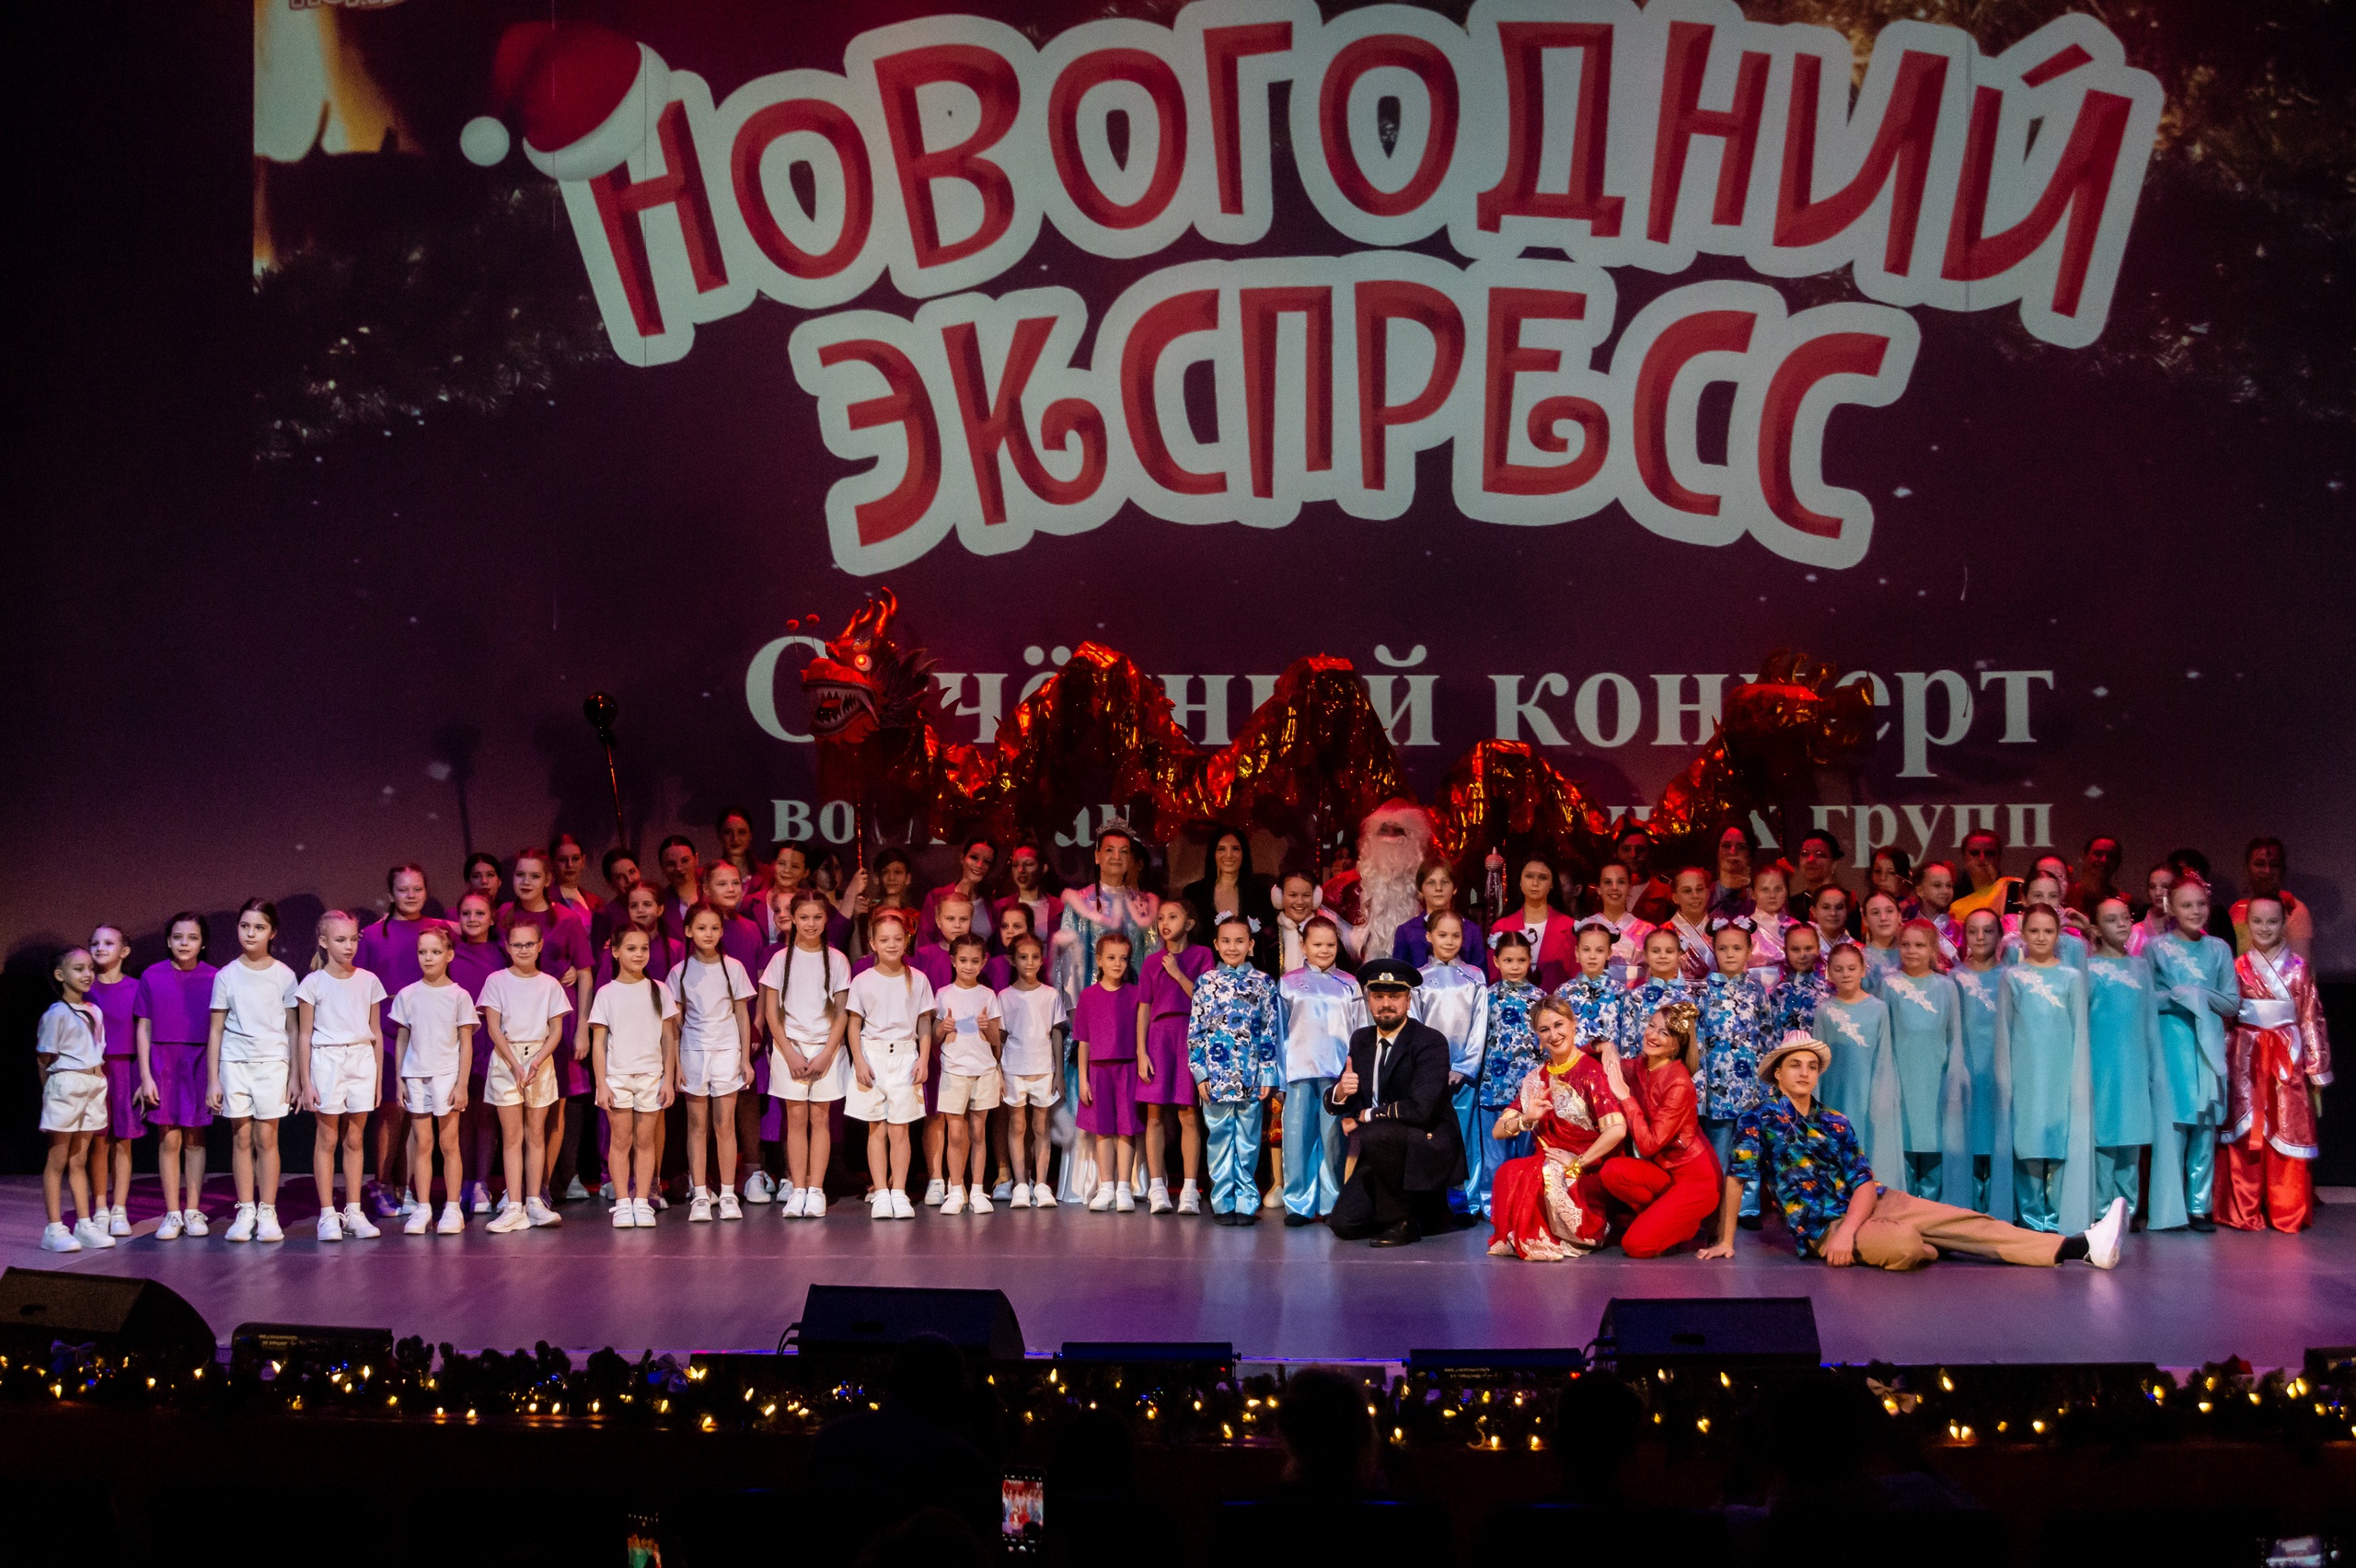 25 декабря прошёл концерт "Новогодний экспресс" в КДЦ "Подвиг": вечер радости, таланта и вдохновения!